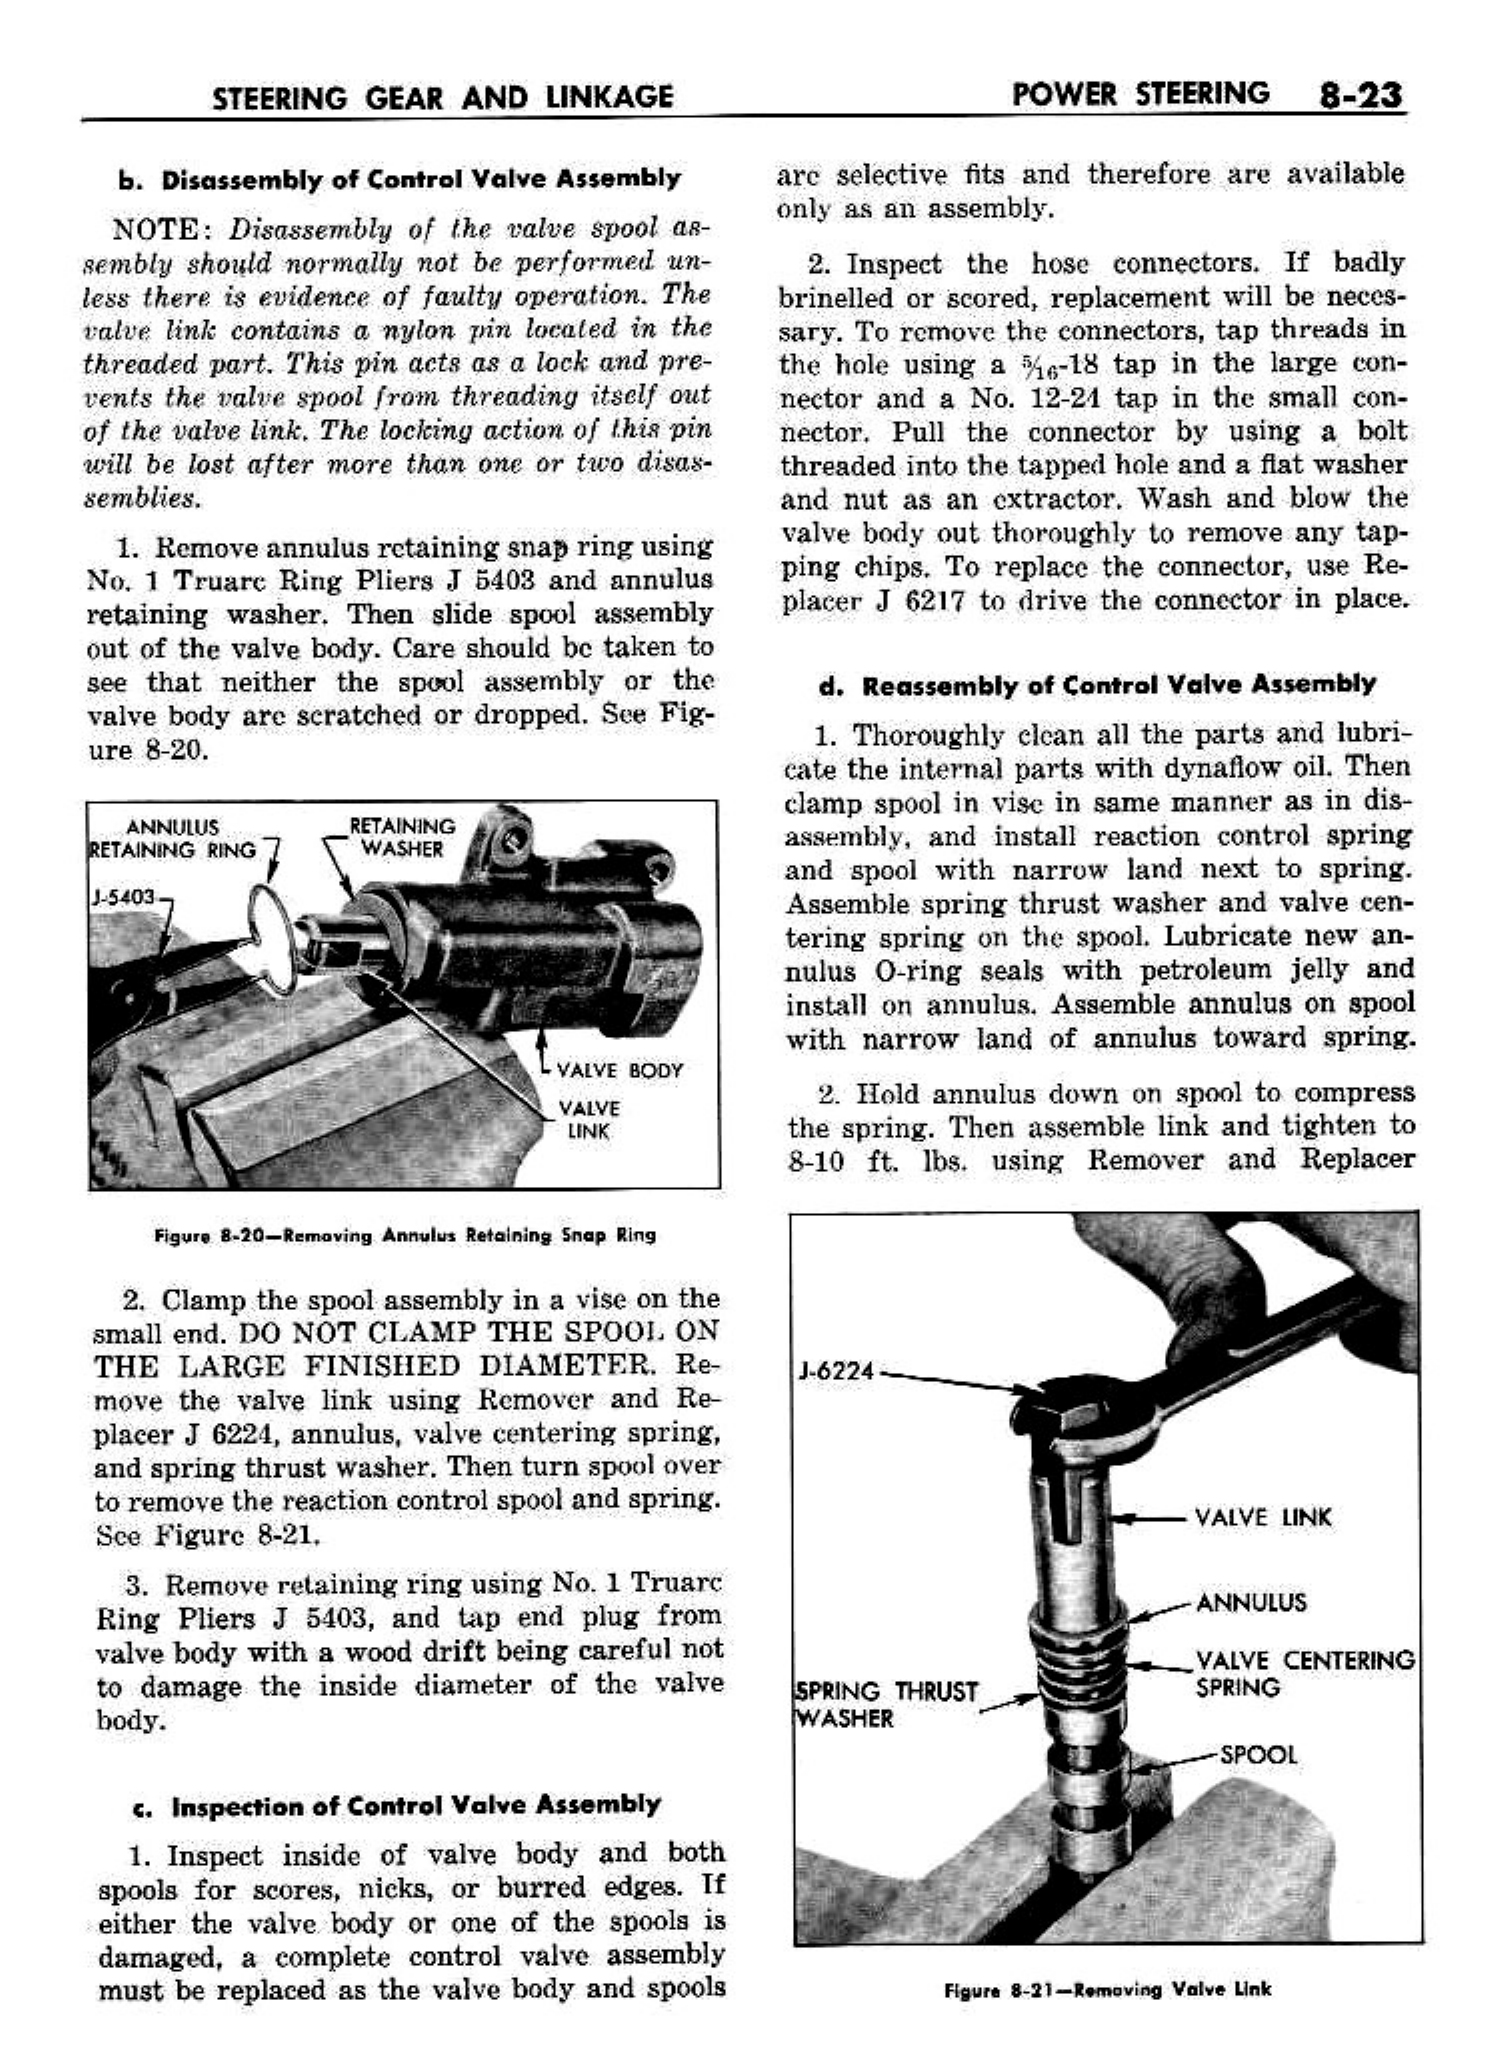 n_09 1958 Buick Shop Manual - Steering_23.jpg